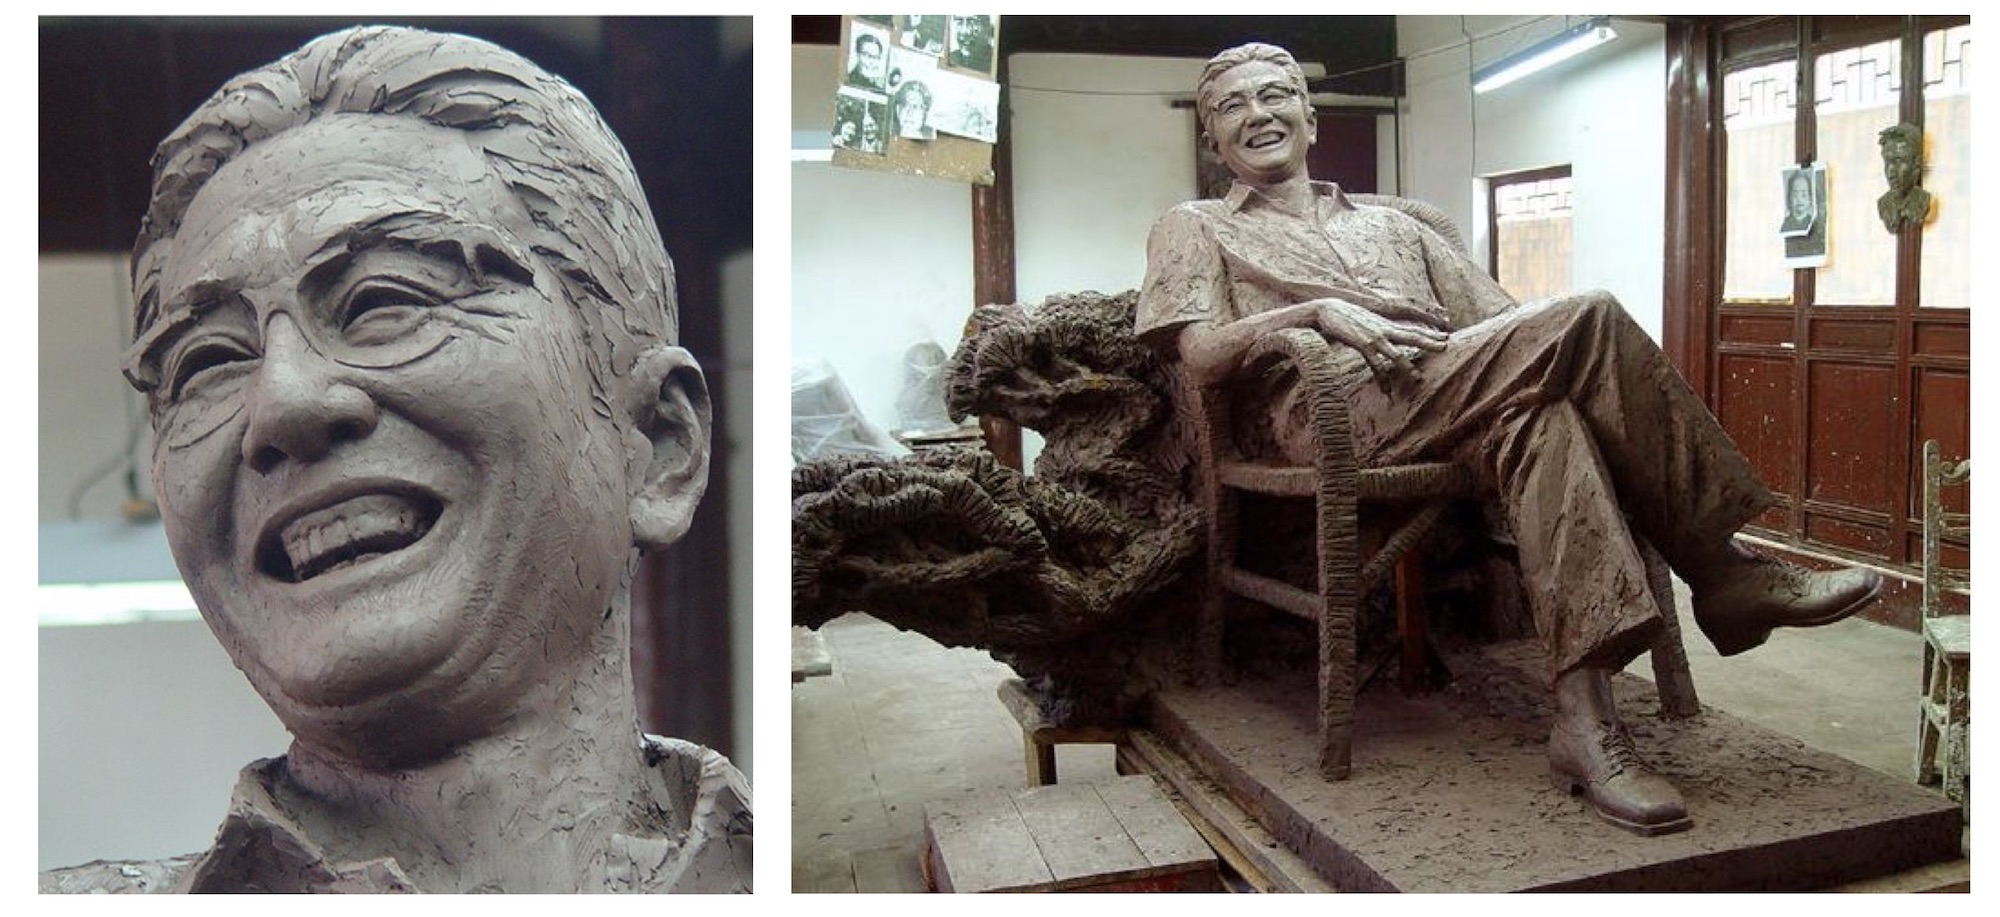 外交部长乔冠华人物肖像雕塑塑像